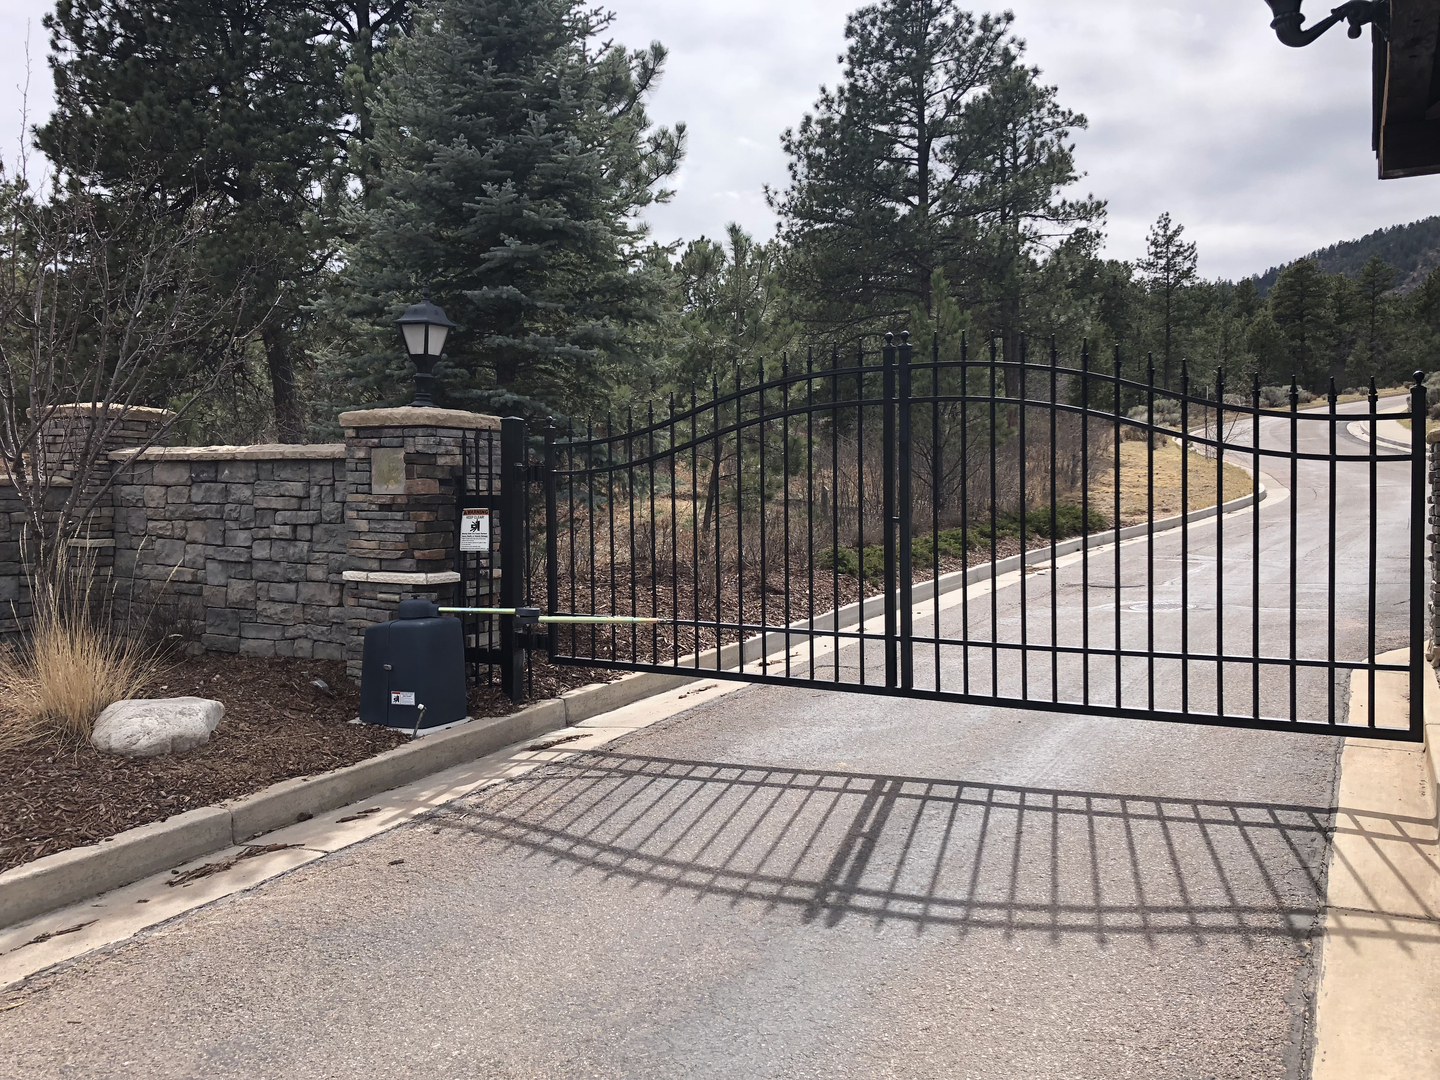 property gate entranceway